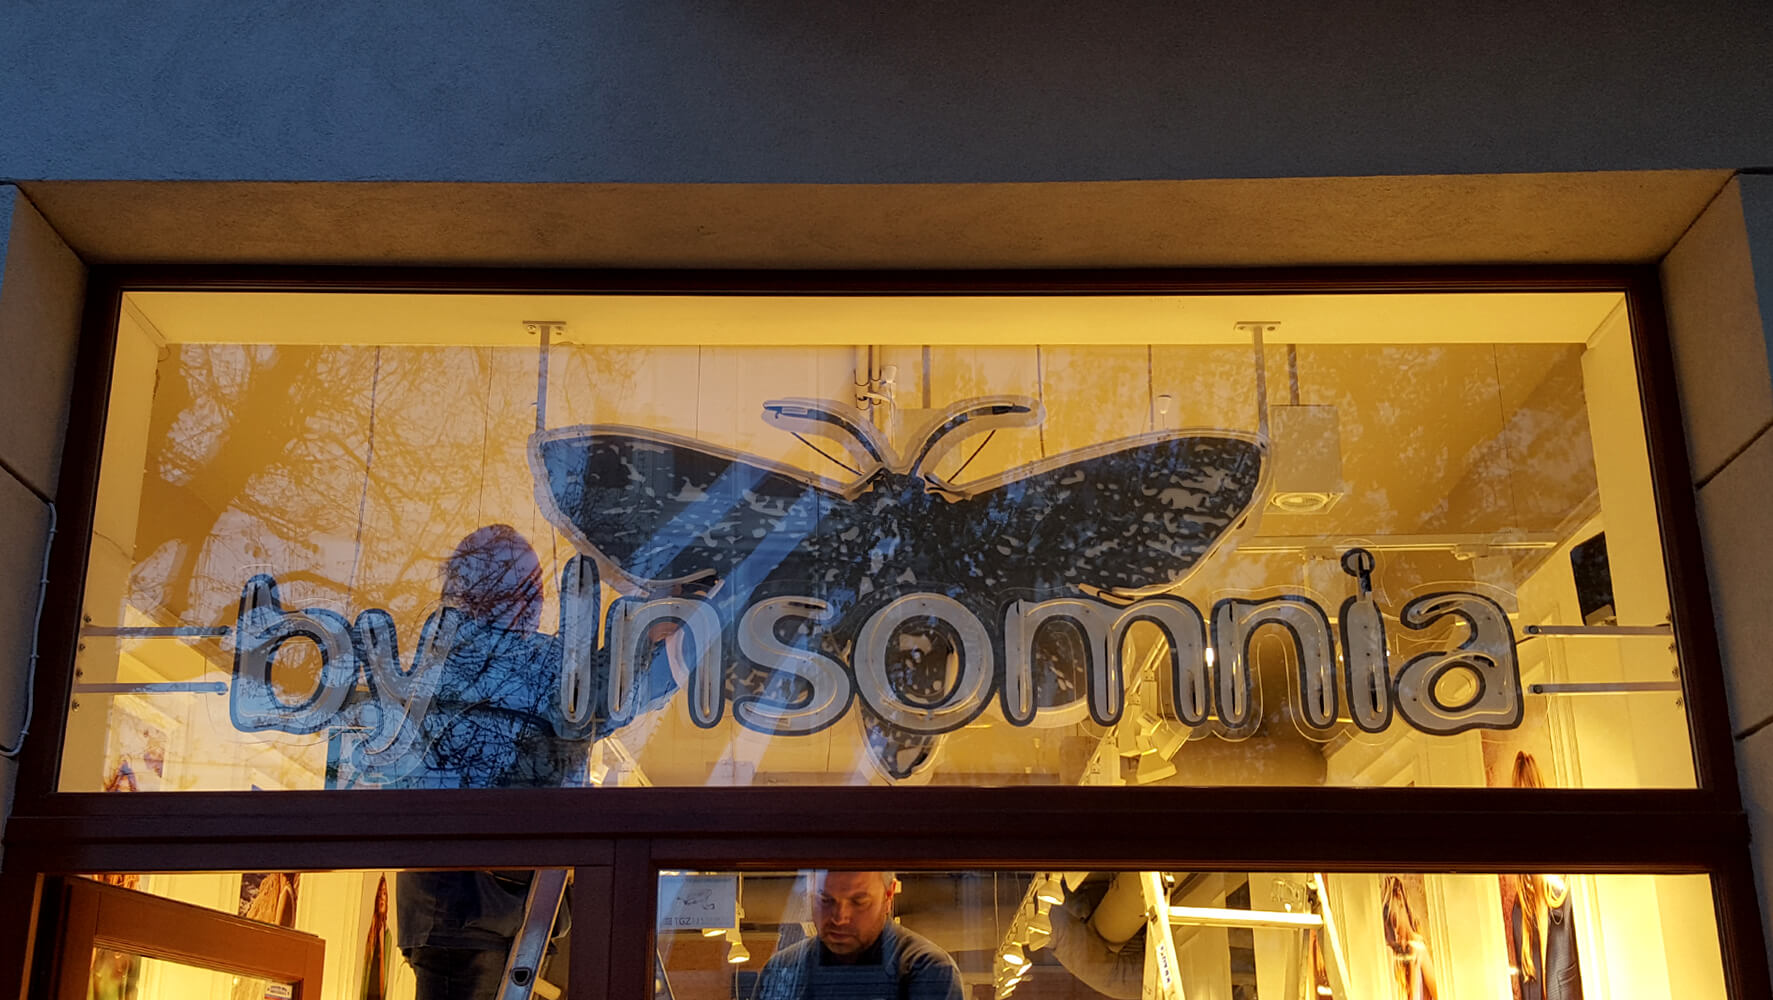 Insomnio - By Insomnia - cartel de neón con el nombre de la empresa, montado sobre plexiglás, colocado detrás del cristal